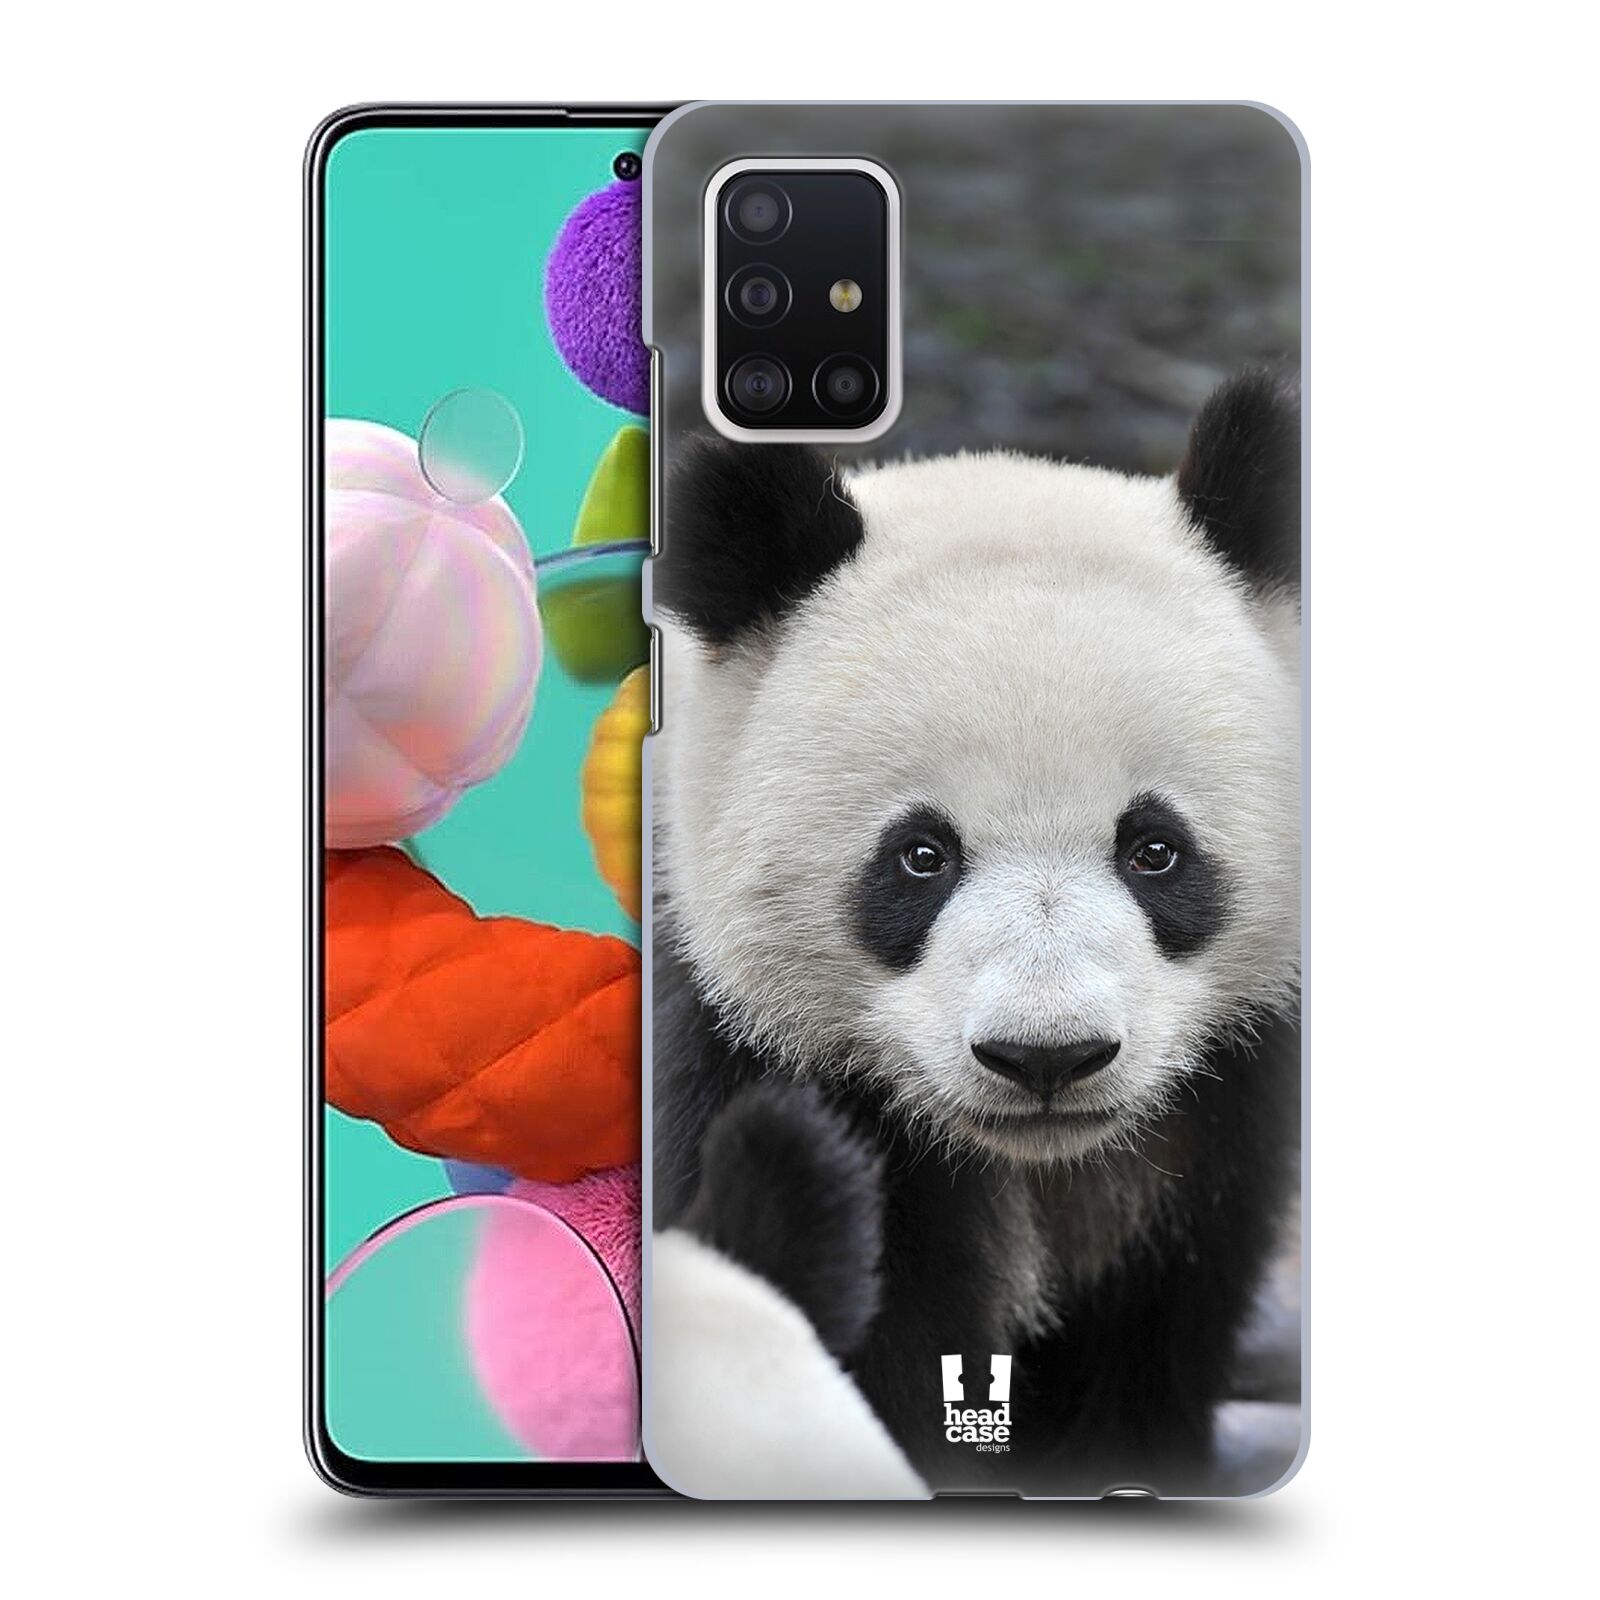 Zadní obal pro mobil Samsung Galaxy A51 - HEAD CASE - Svět zvířat medvěd panda